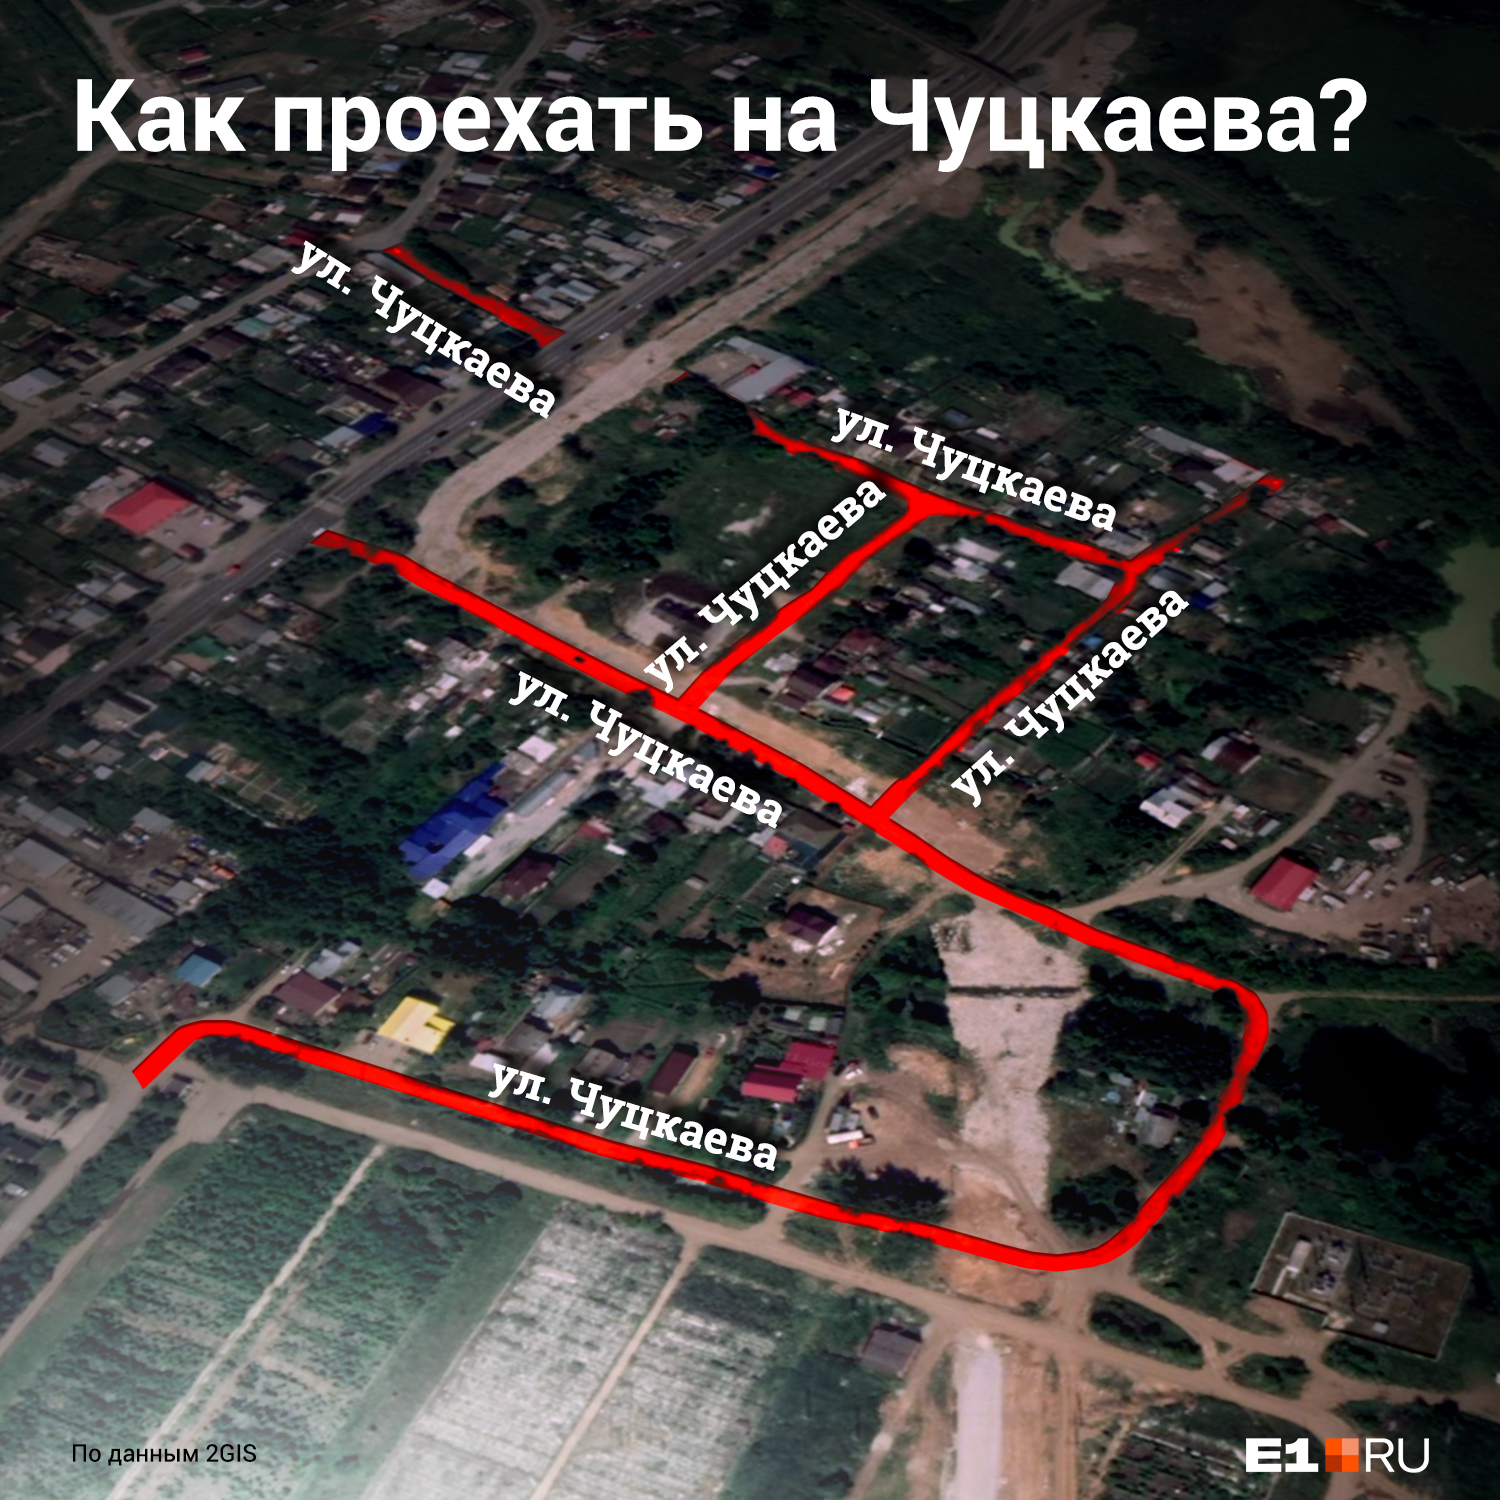 Екатеринбург, где логика? Шесть примеров, о которые ломается закономерность улиц